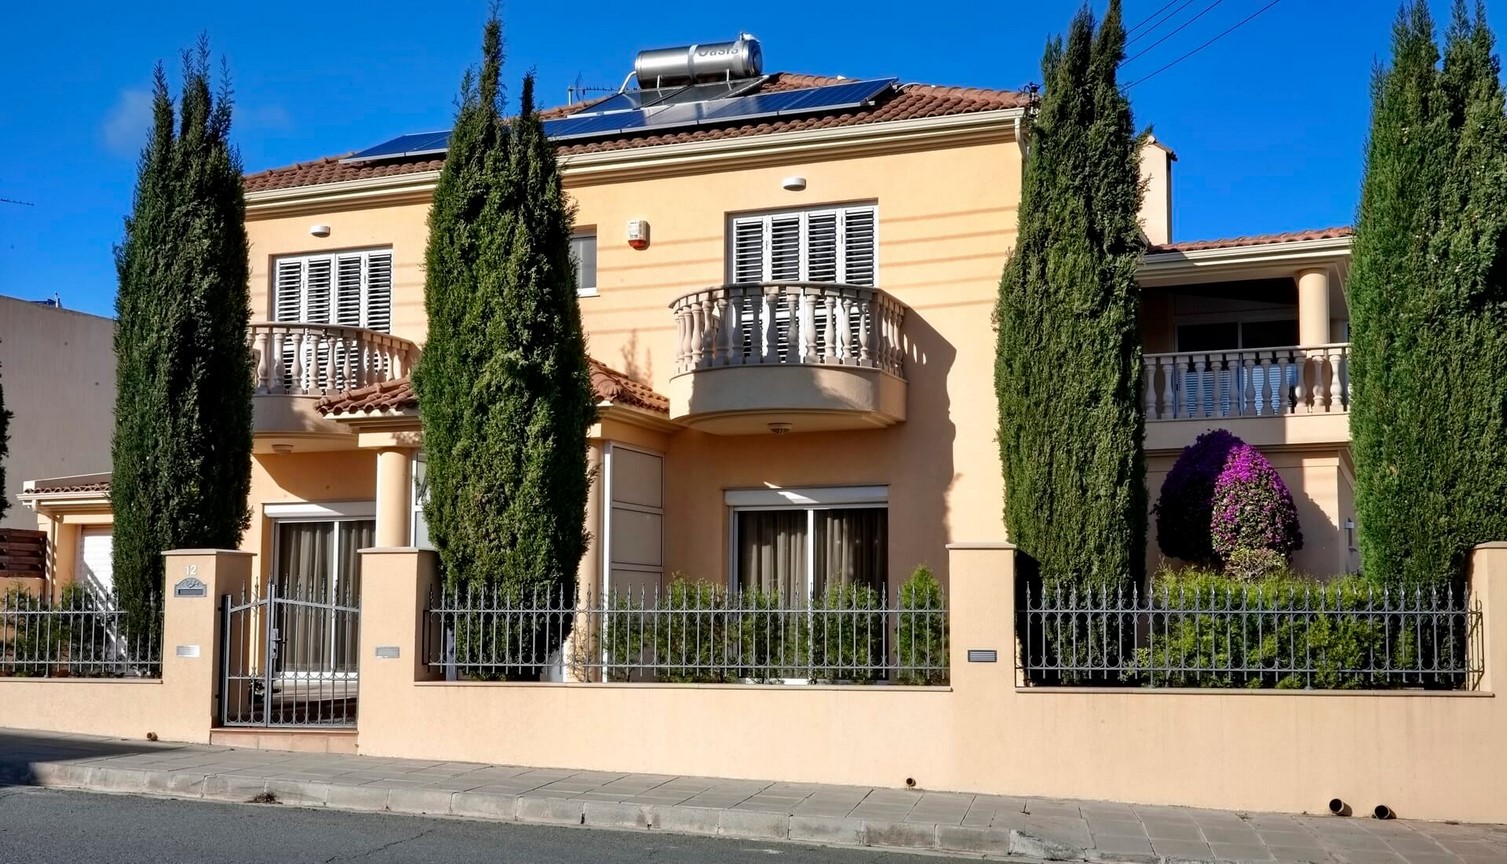 House – 4 bedroom for rent, Episkopi area, Limassol